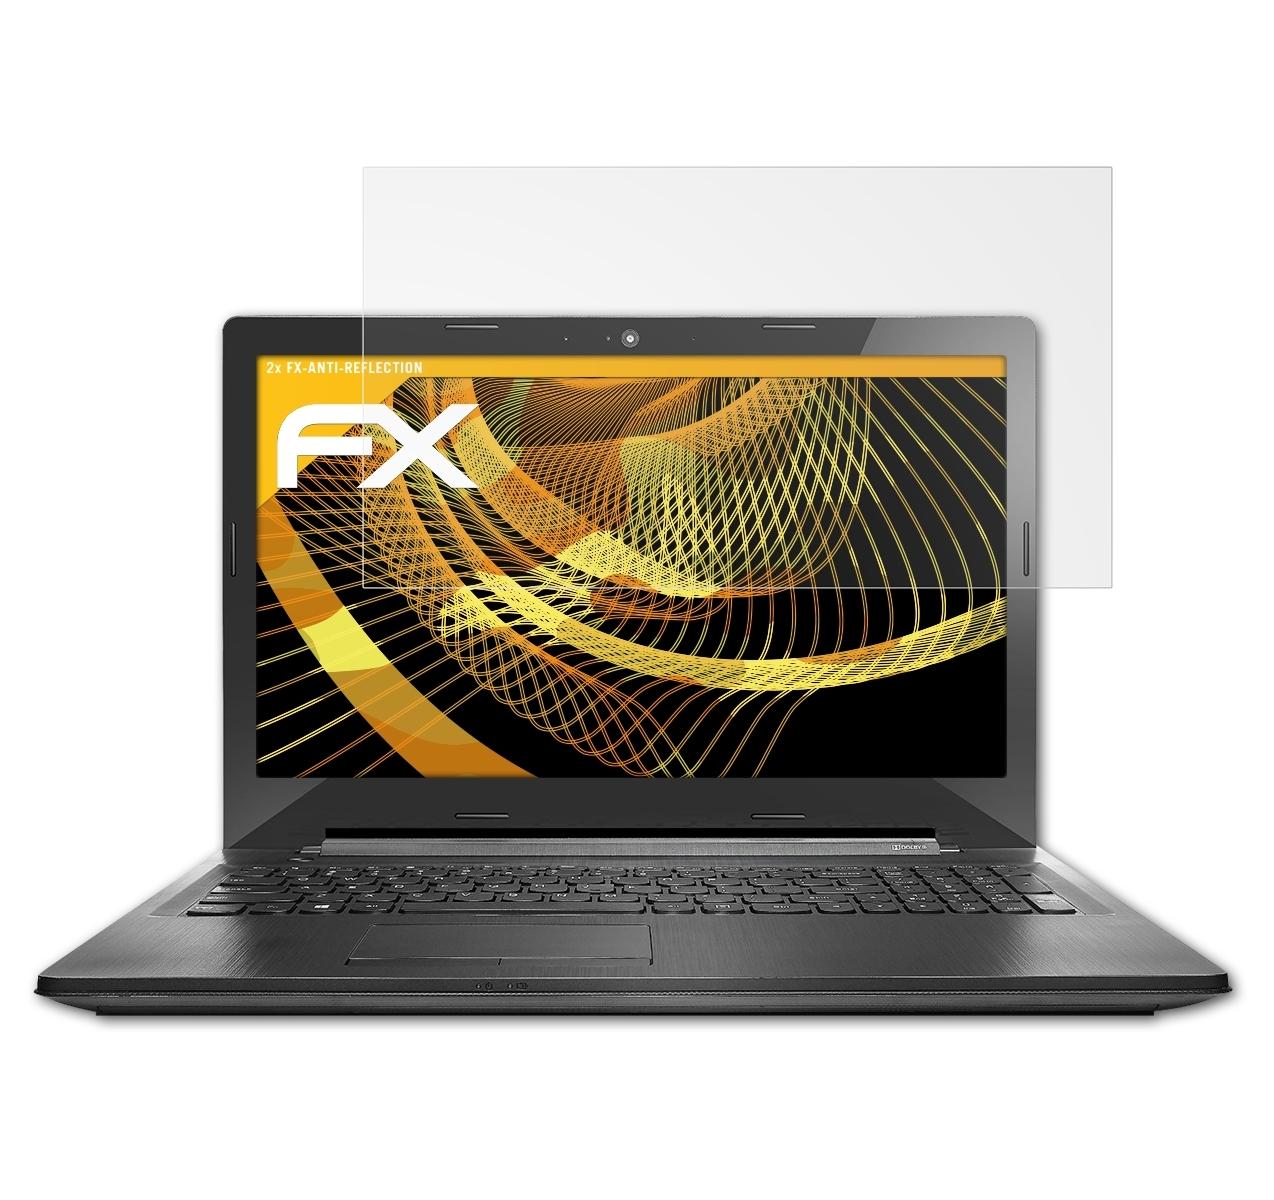 ATFOLIX 2x FX-Antireflex Displayschutz(für G50-30 G50-45) / Lenovo